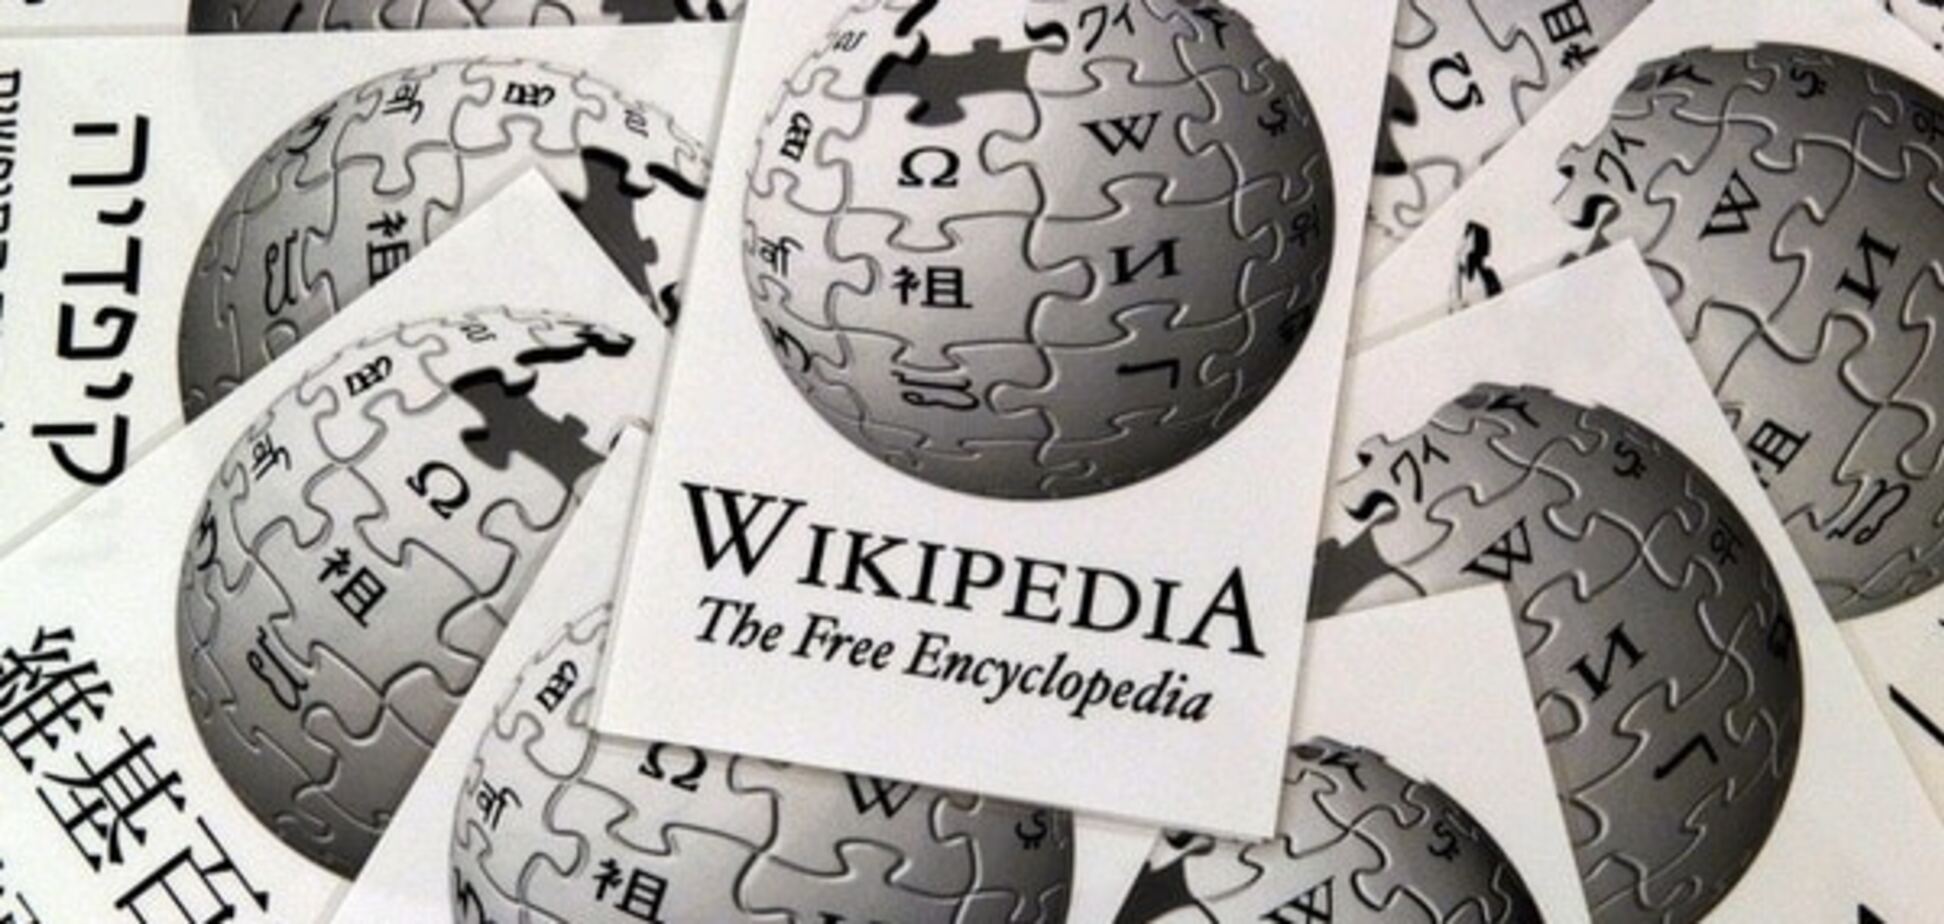 Википедии исполнилось 15 лет: история создания и интересные факты